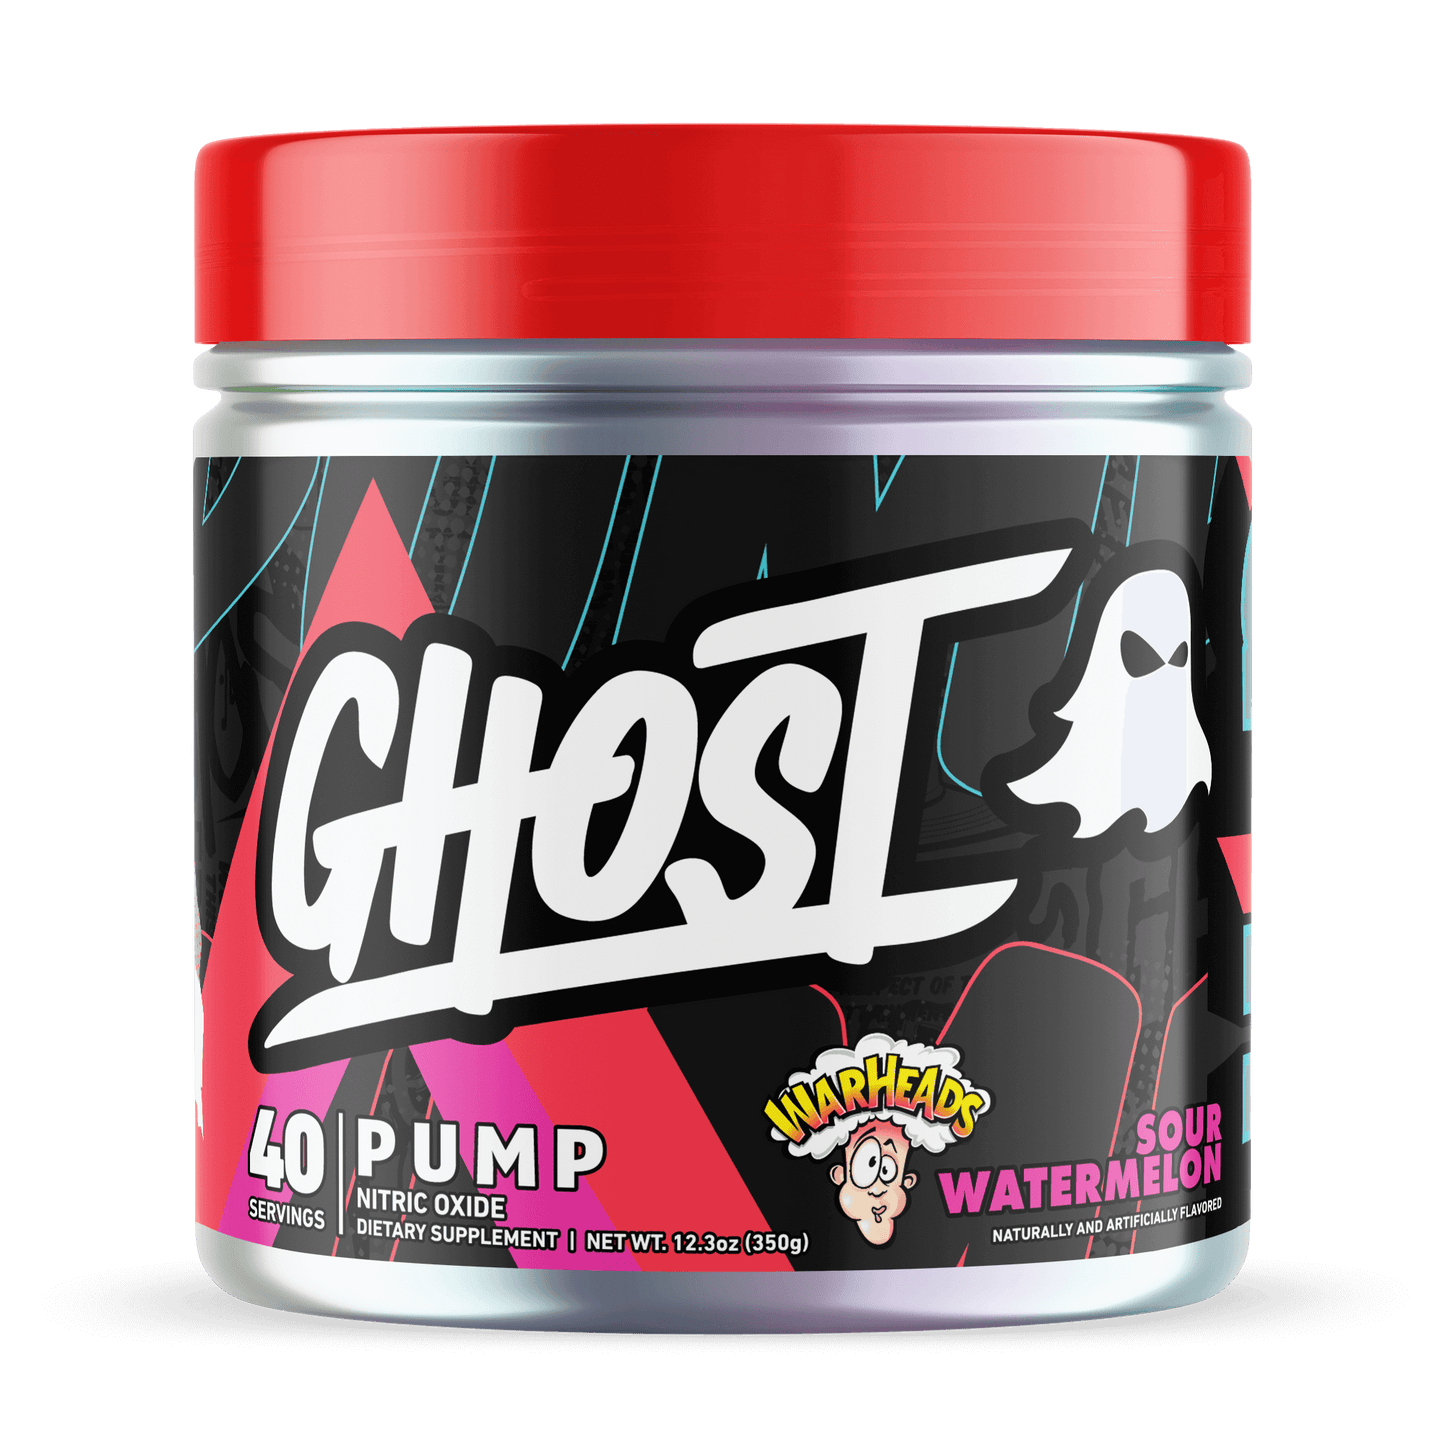 Ghost Pump